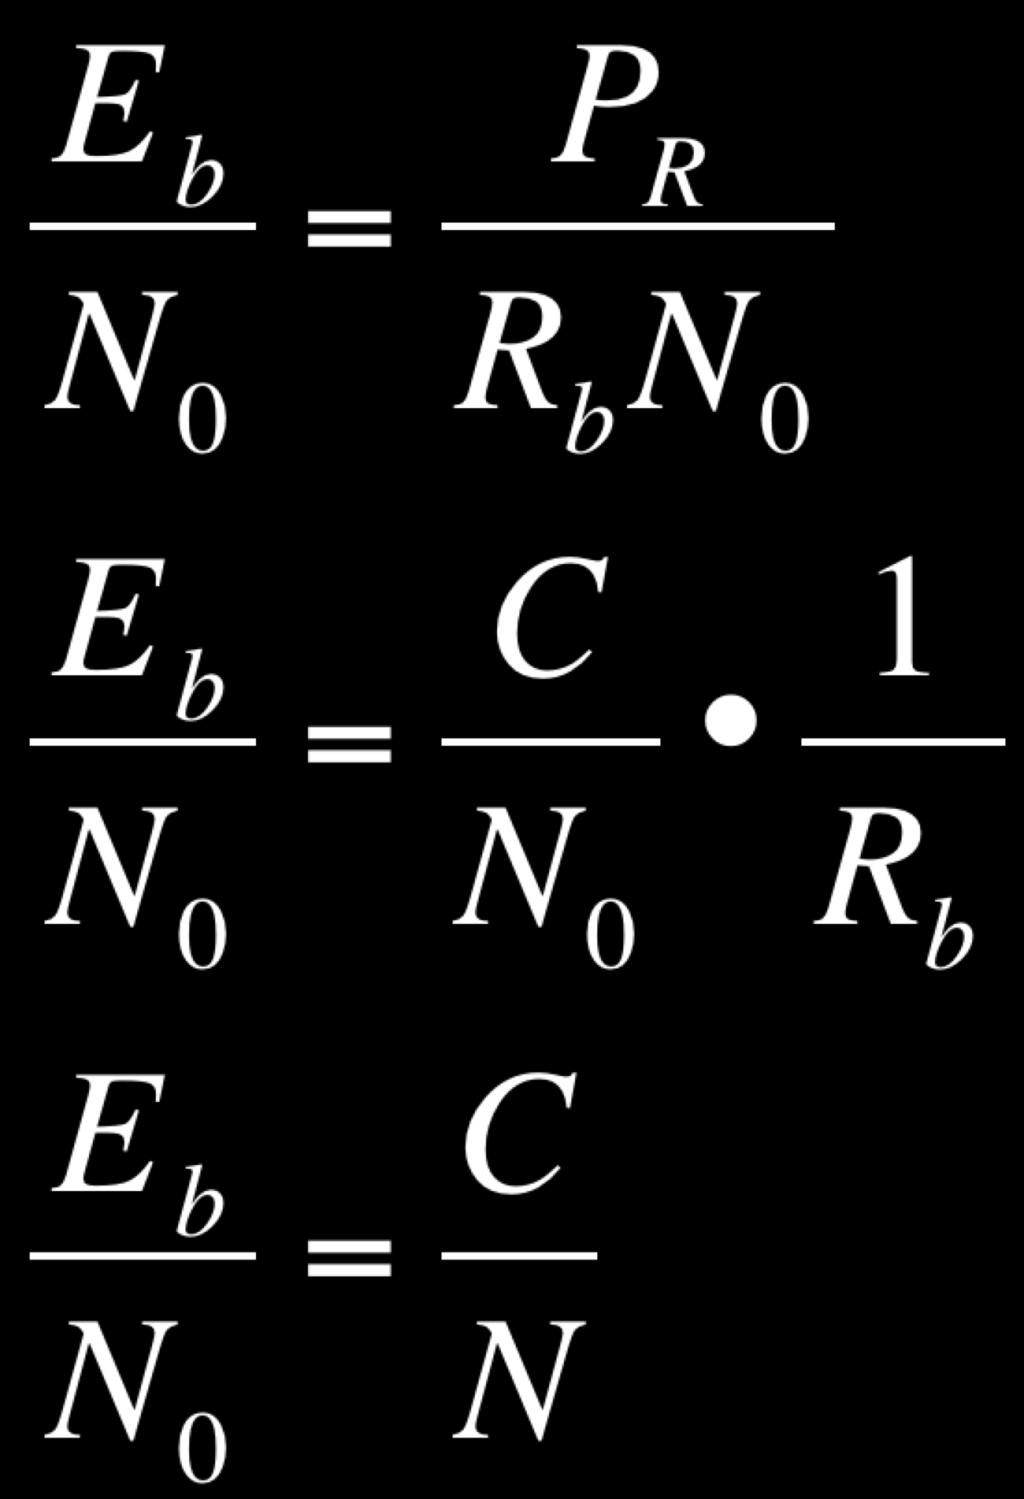 If B N = R B Example: [C/N] = [E b / N 0 ] = 1.